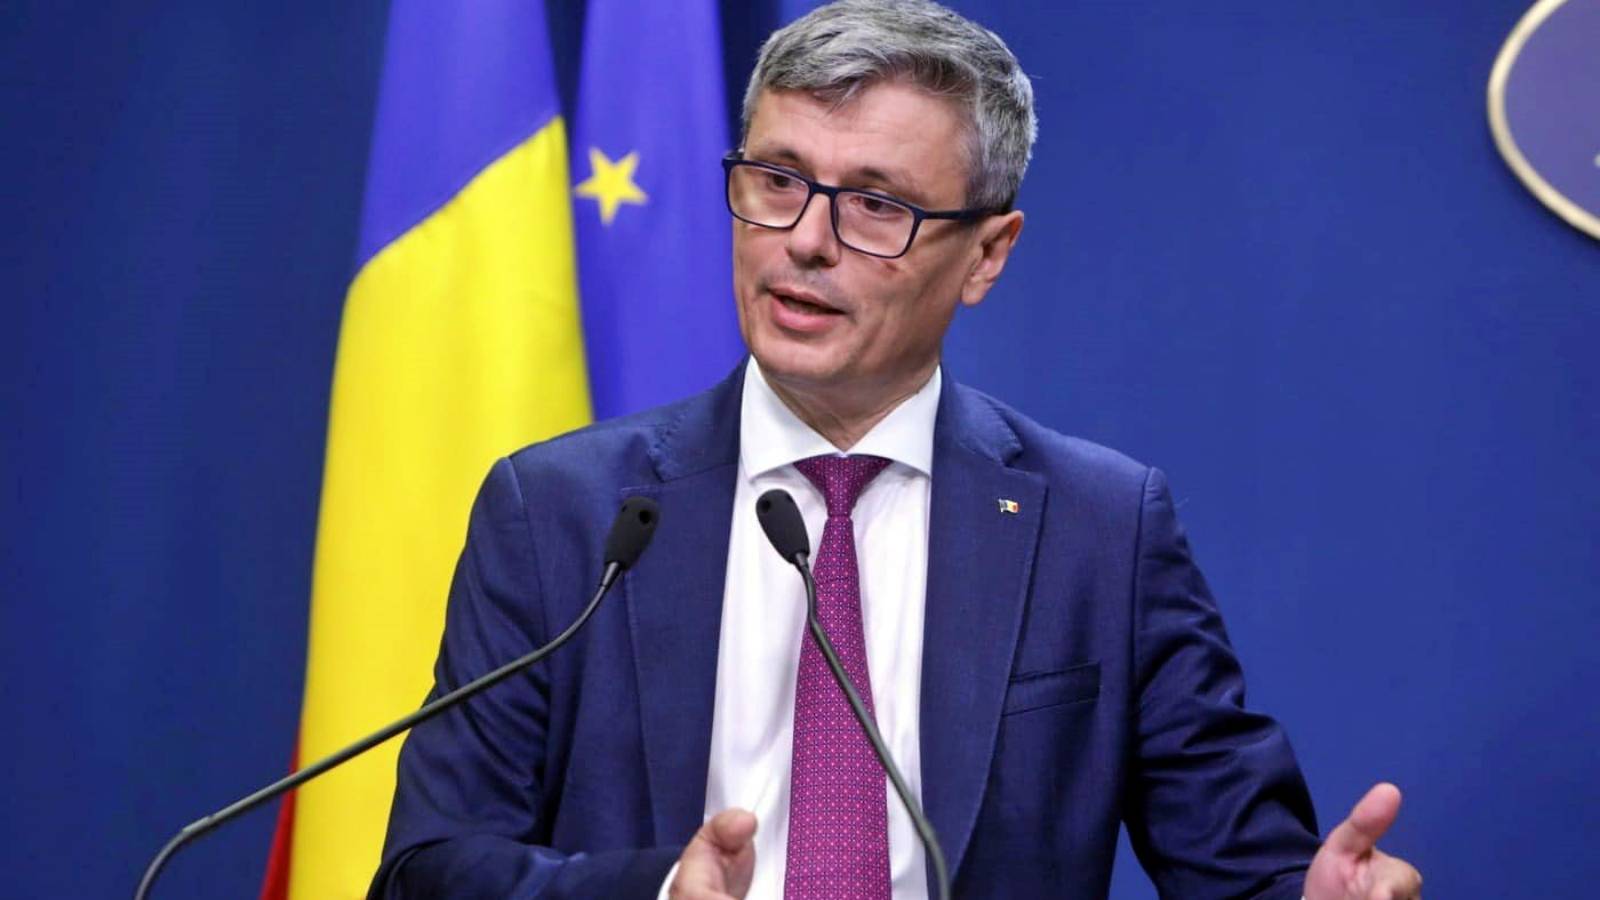 Virgil Popescu sidste øjeblik Vigtige officielle foranstaltninger bekræftet Rumænien